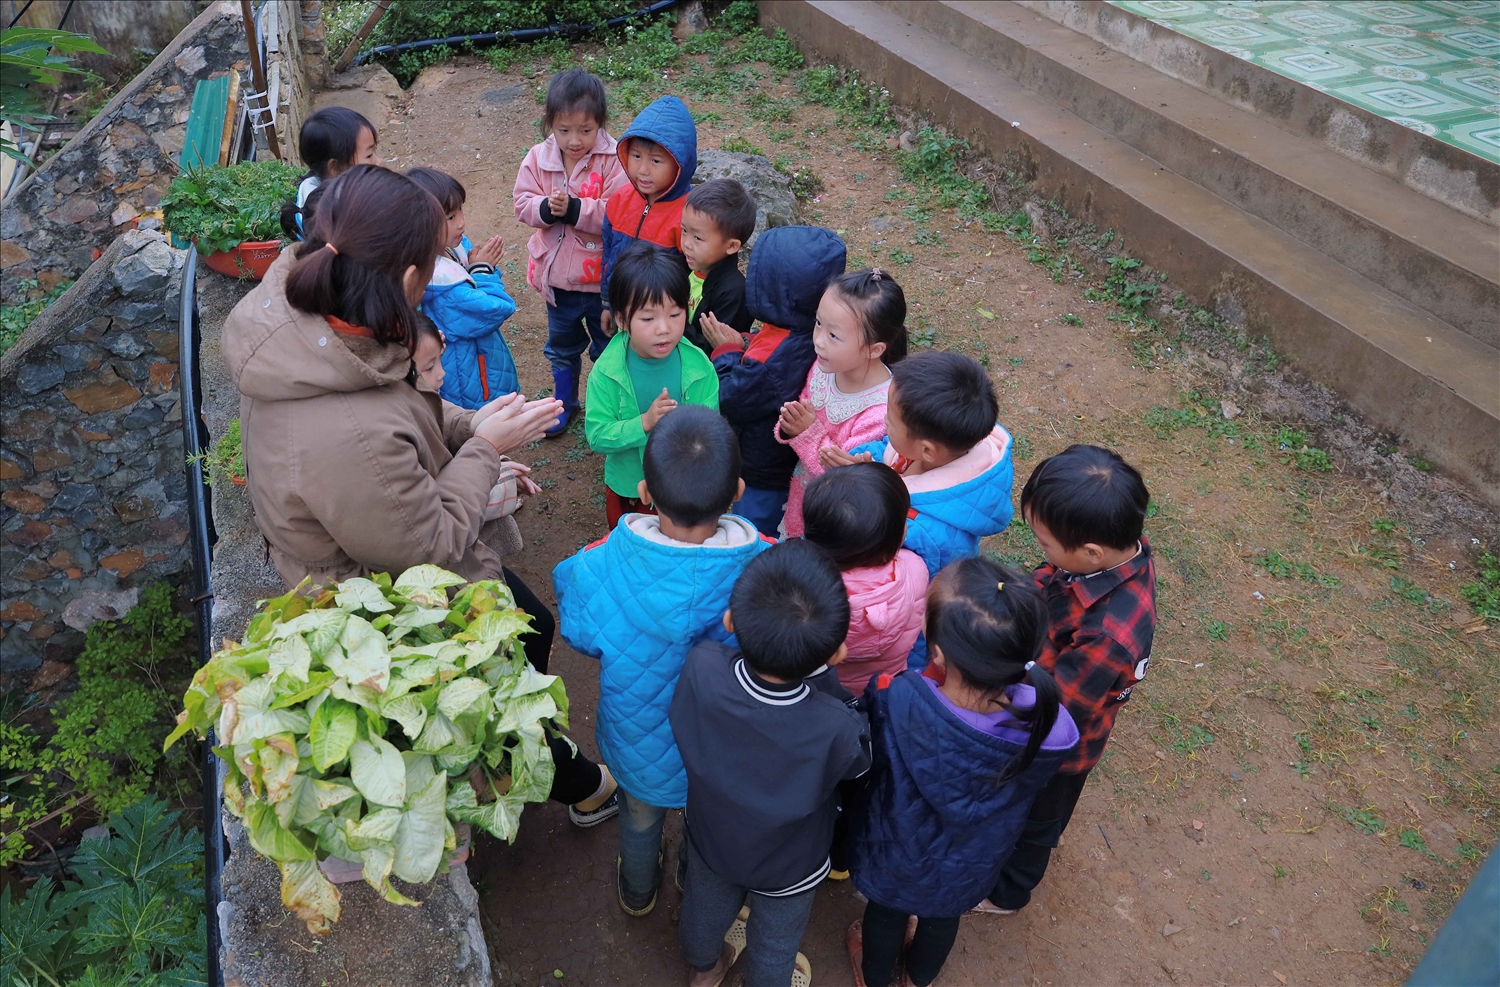 Cô giáo Dương Thị Thu Trang ước khoảng sân đất trước điểm trường sẽ được thảm bê tông để các em học sinh có chỗ múa hát và không bị ngã khi trời mưa